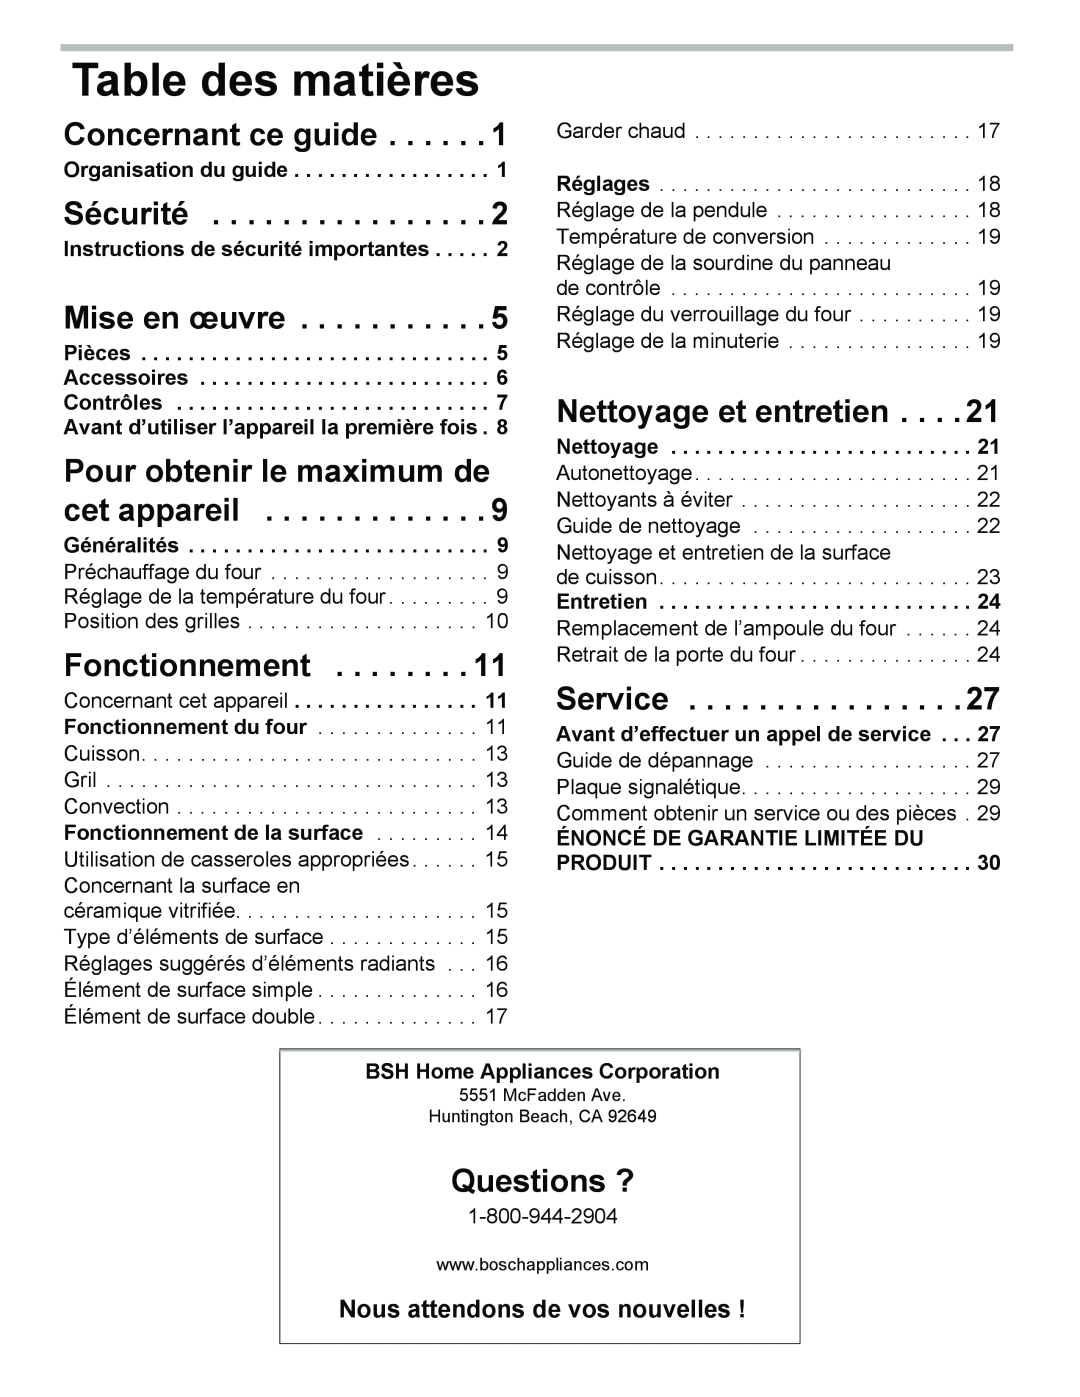 Bosch Appliances HES3063U Table des matières, Concernant ce guide, Sécurité, Mise en œuvre, Fonctionnement, Questions ? 